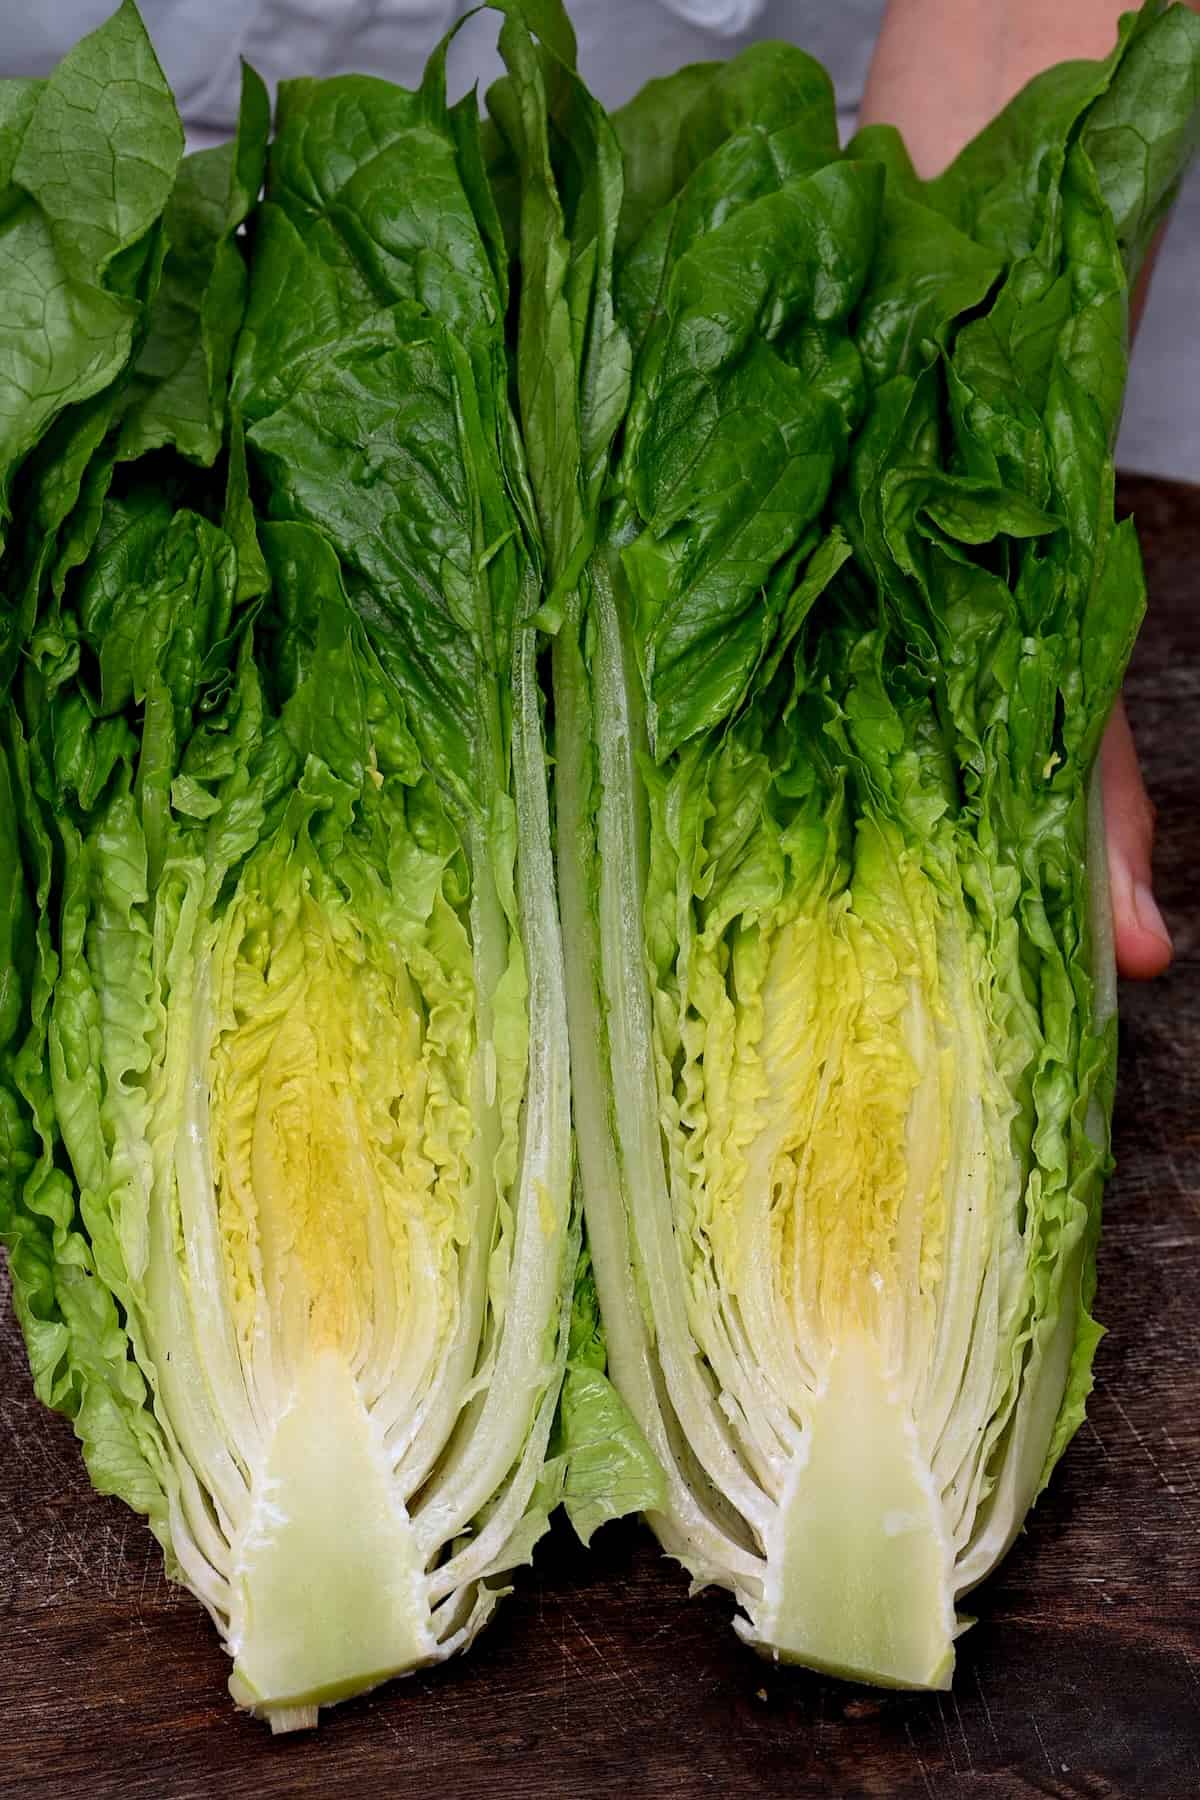 A head of Romaine lettuce cut in two